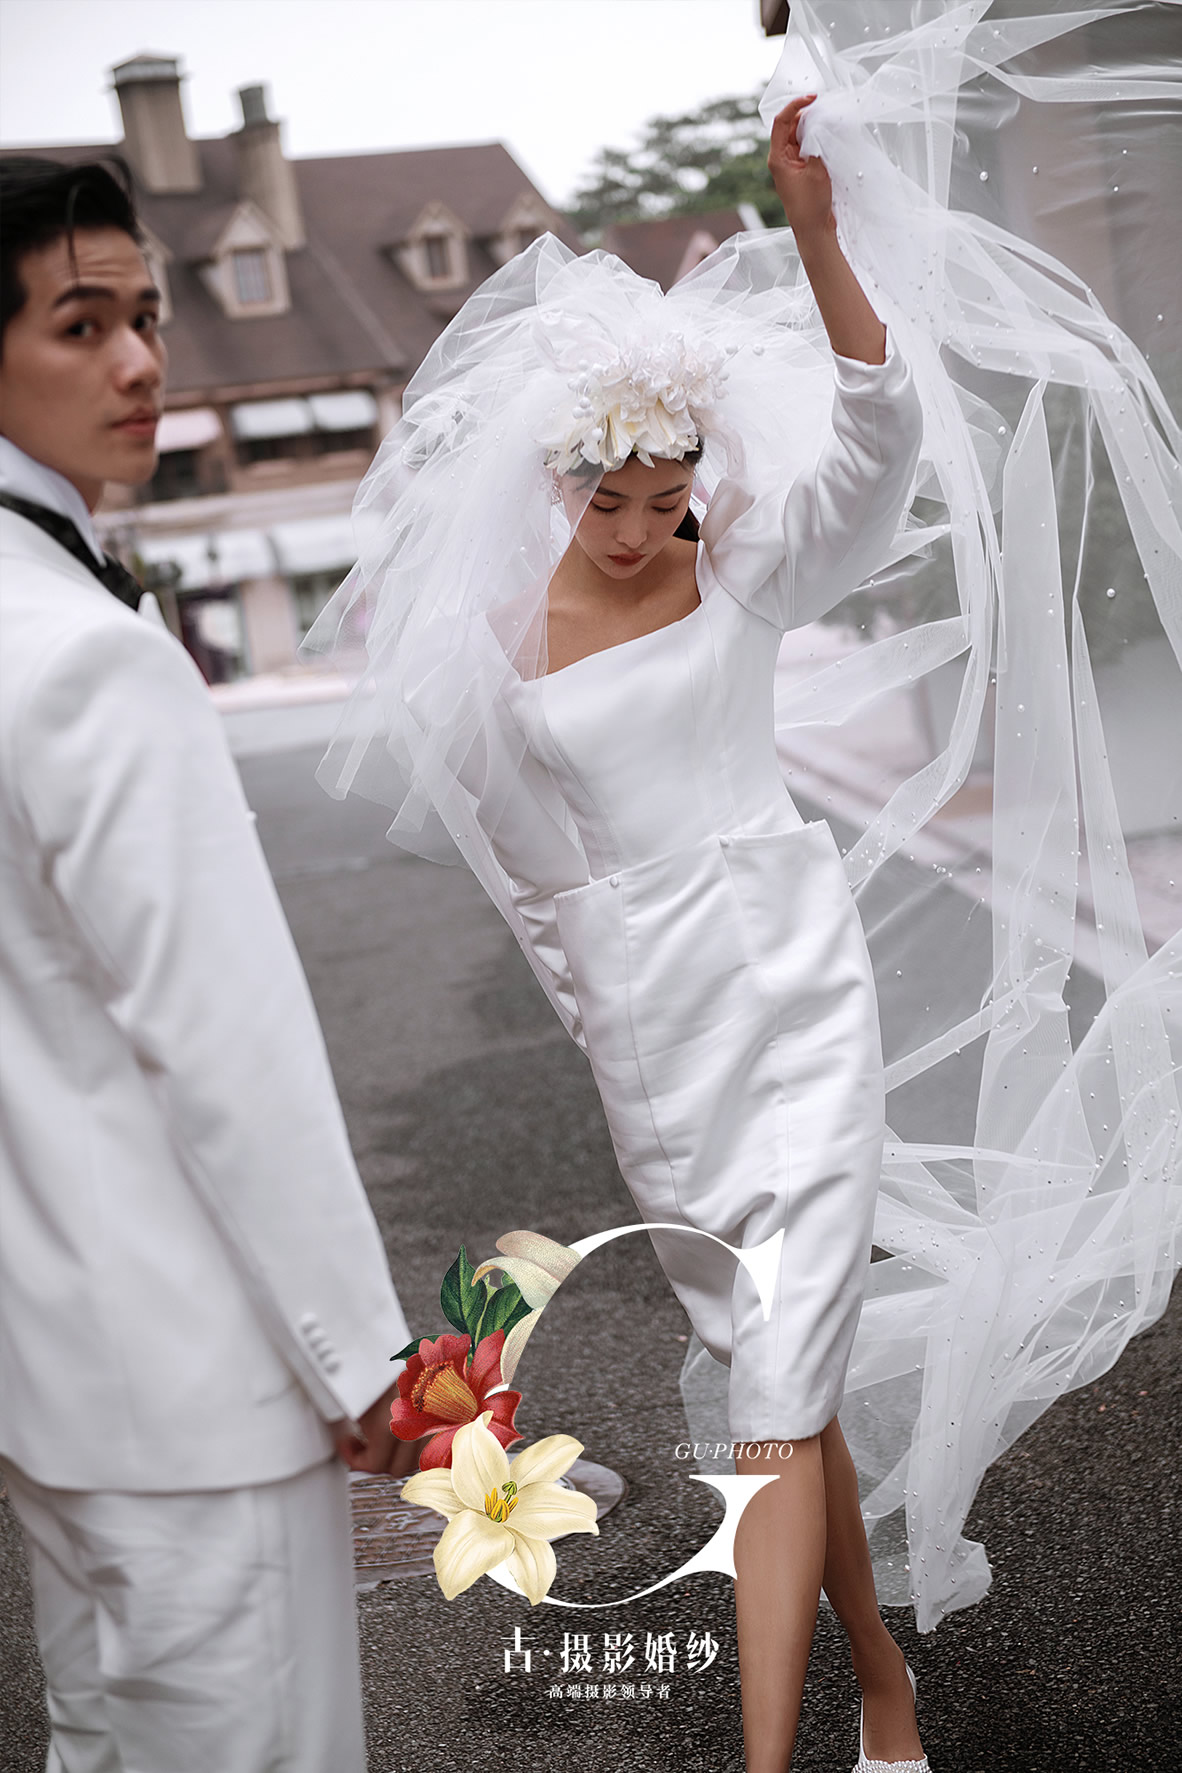 公主道 - 广州婚纱景点客照 - 广州婚纱摄影-广州古摄影官网